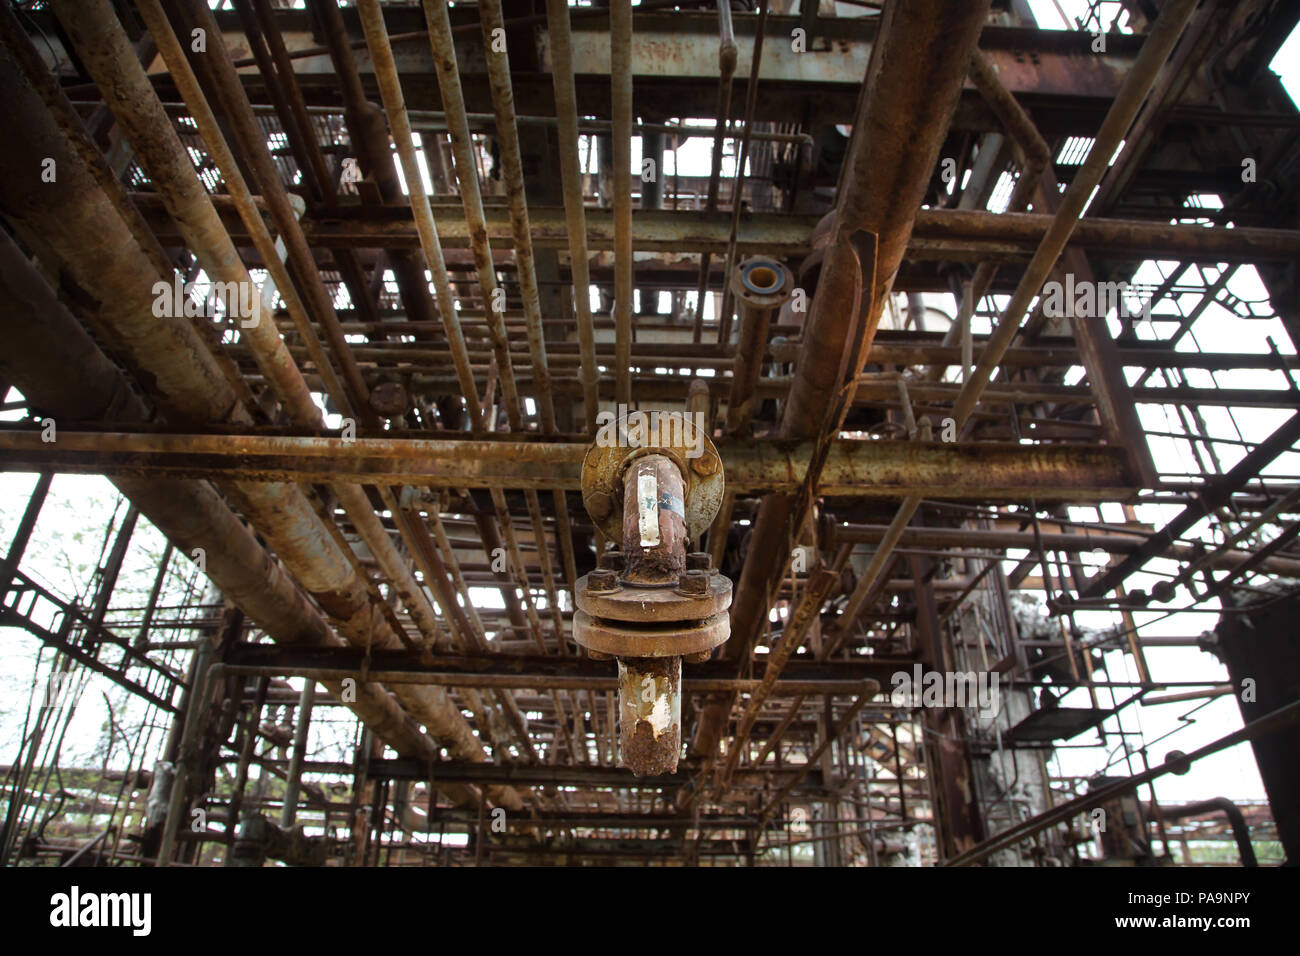 La structure métallique à l'intérieur de l'Union Carbide abandonné ancien complexe industriel, Bhopal, Inde Banque D'Images